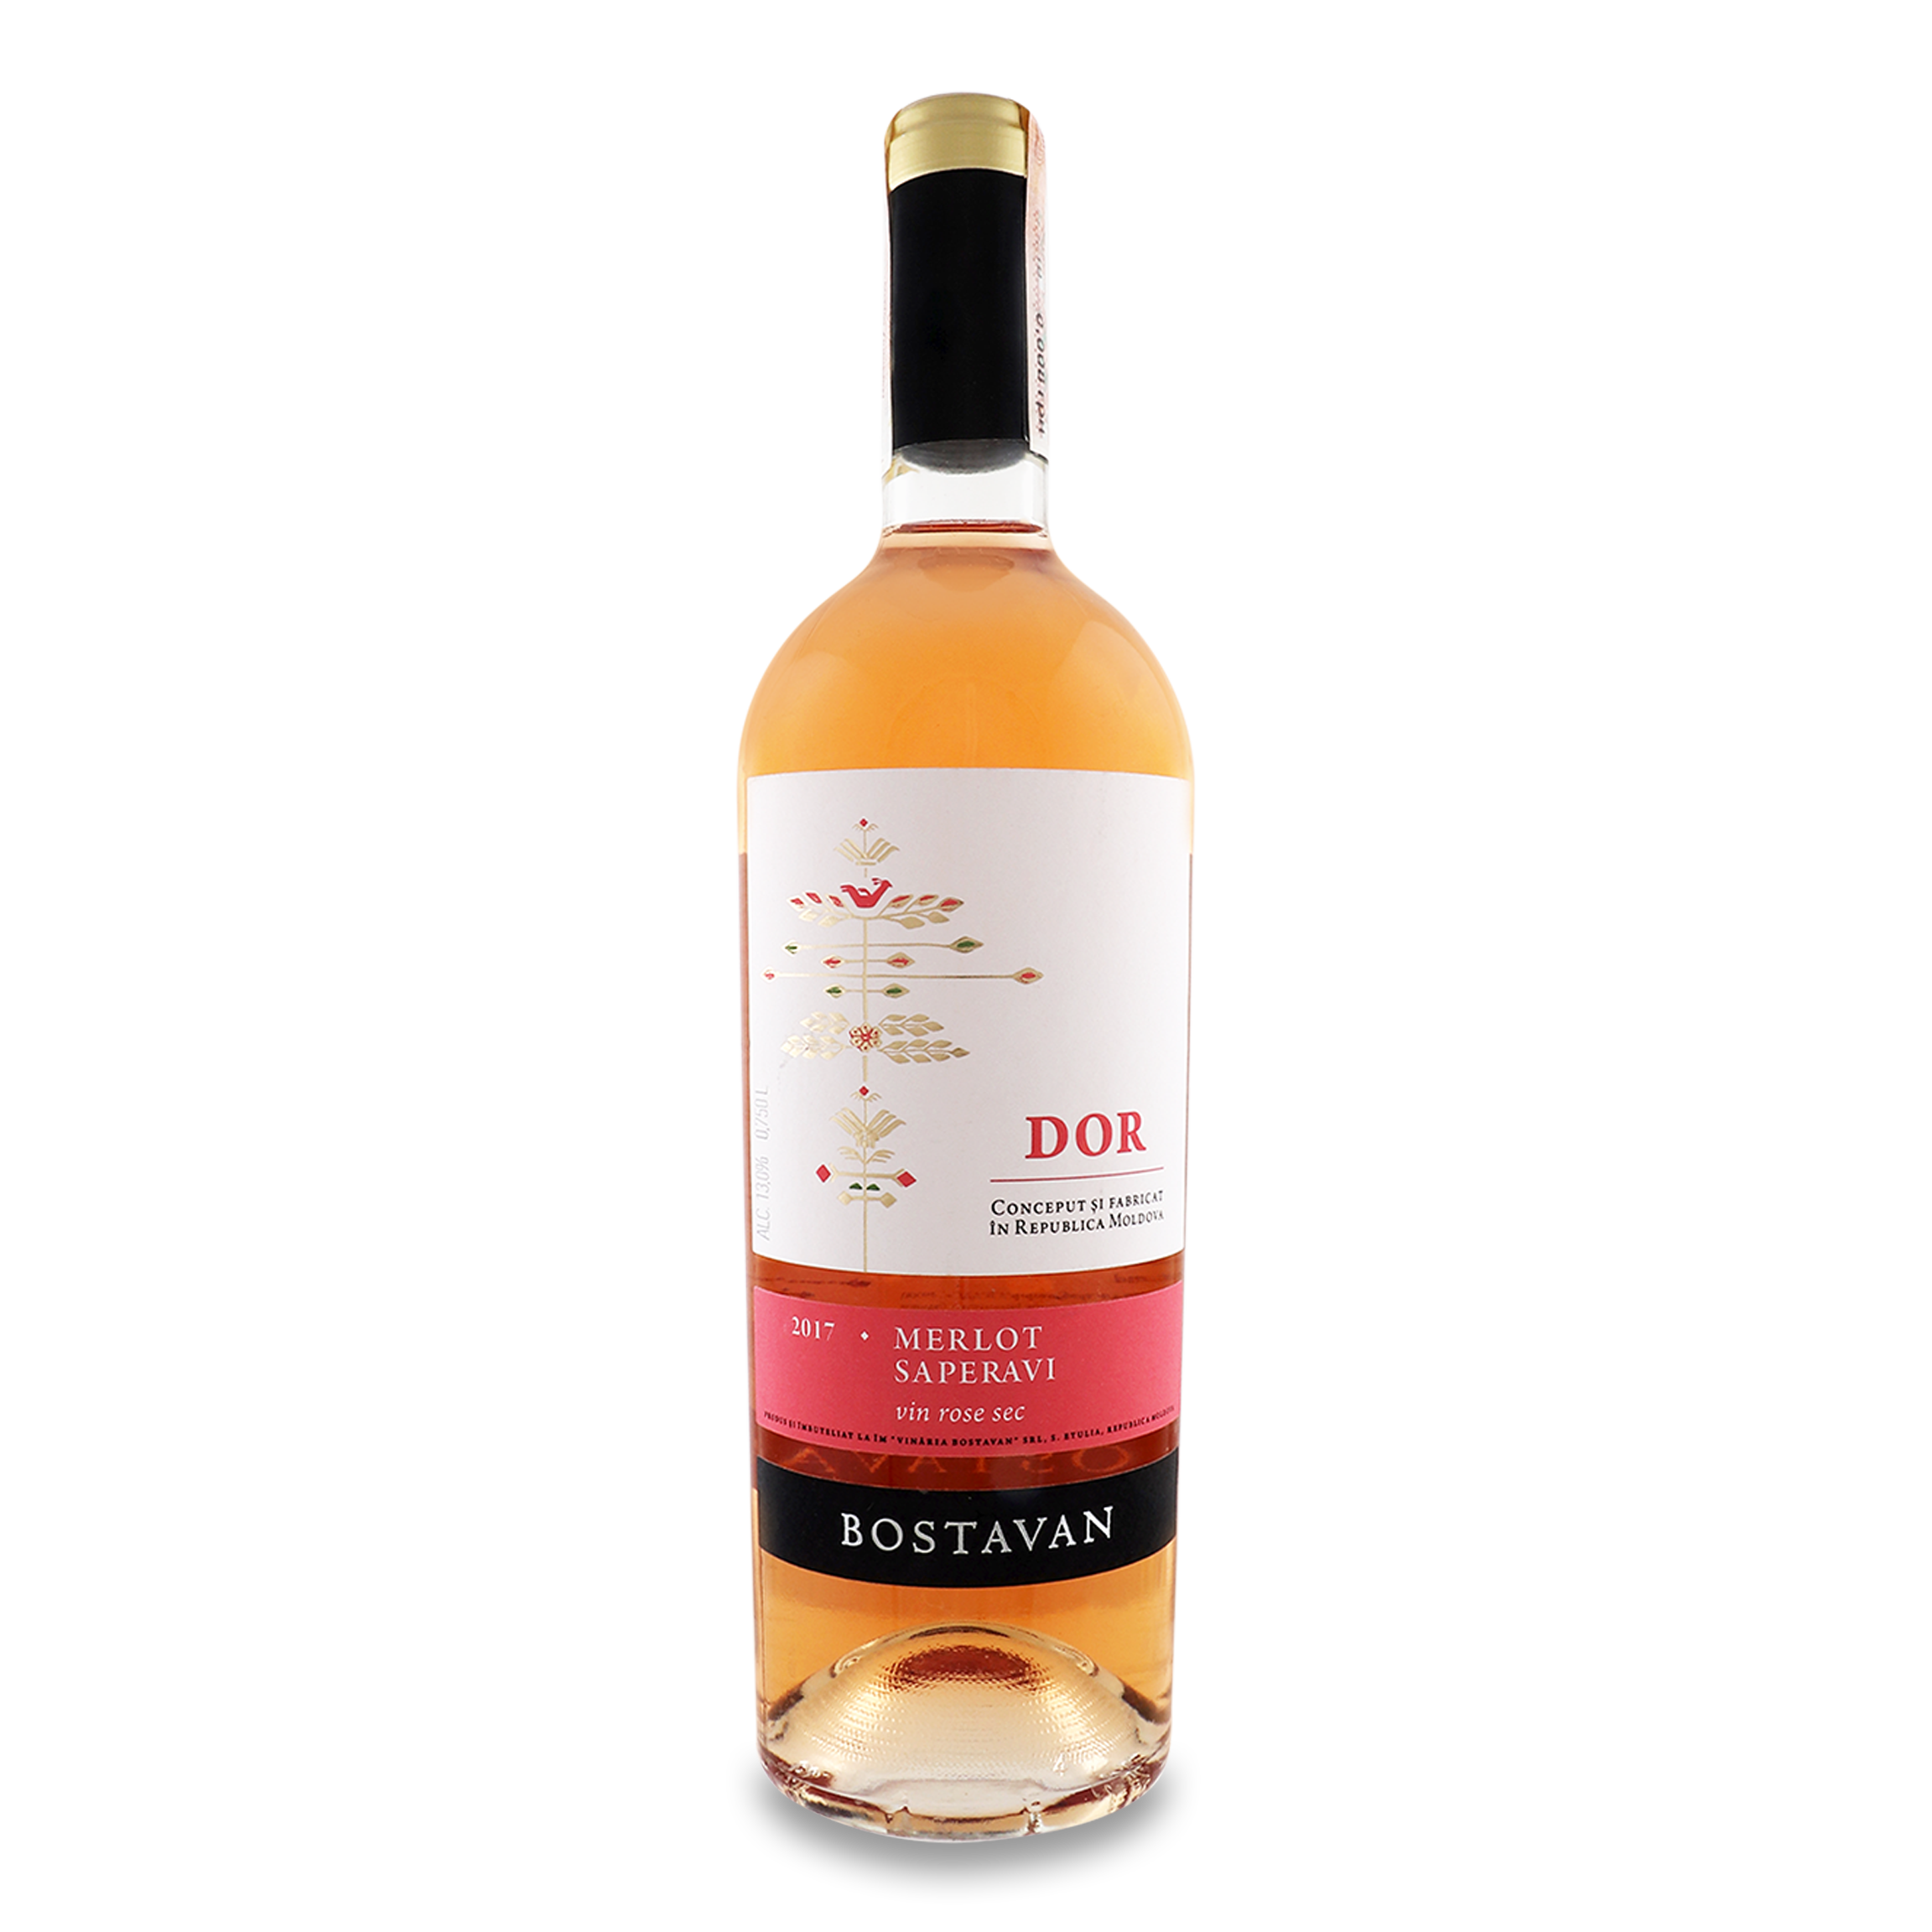 Bostavan DOR Merlot-Saperavi pink dry wine 13% 0.75 l 2